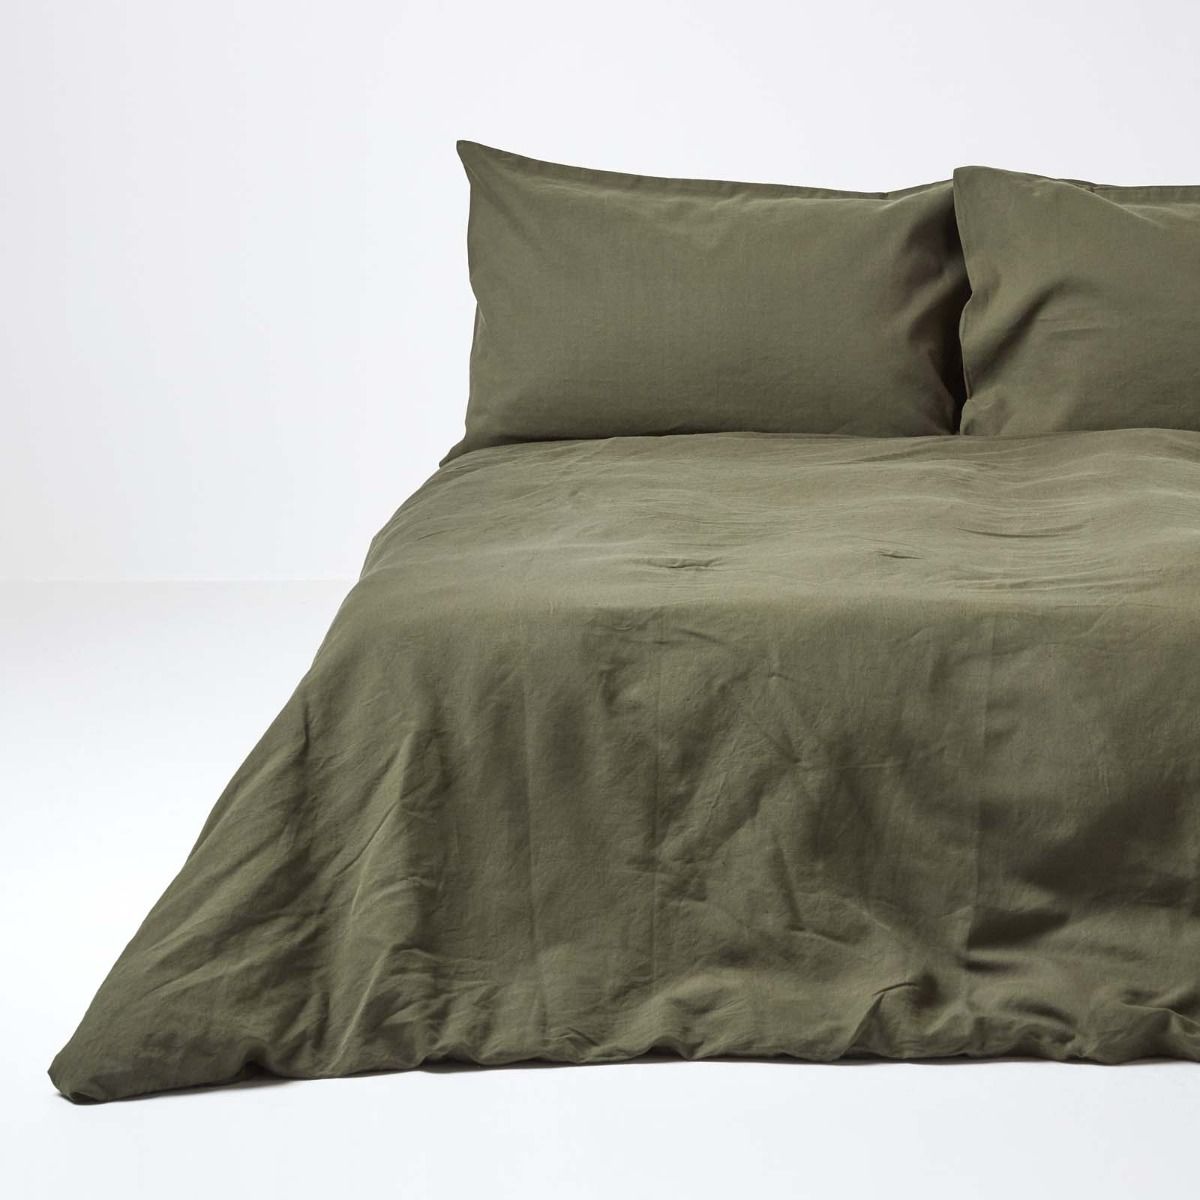 Khaki Green Linen Duvet Cover Set, Luxury Linen Duvet Cover